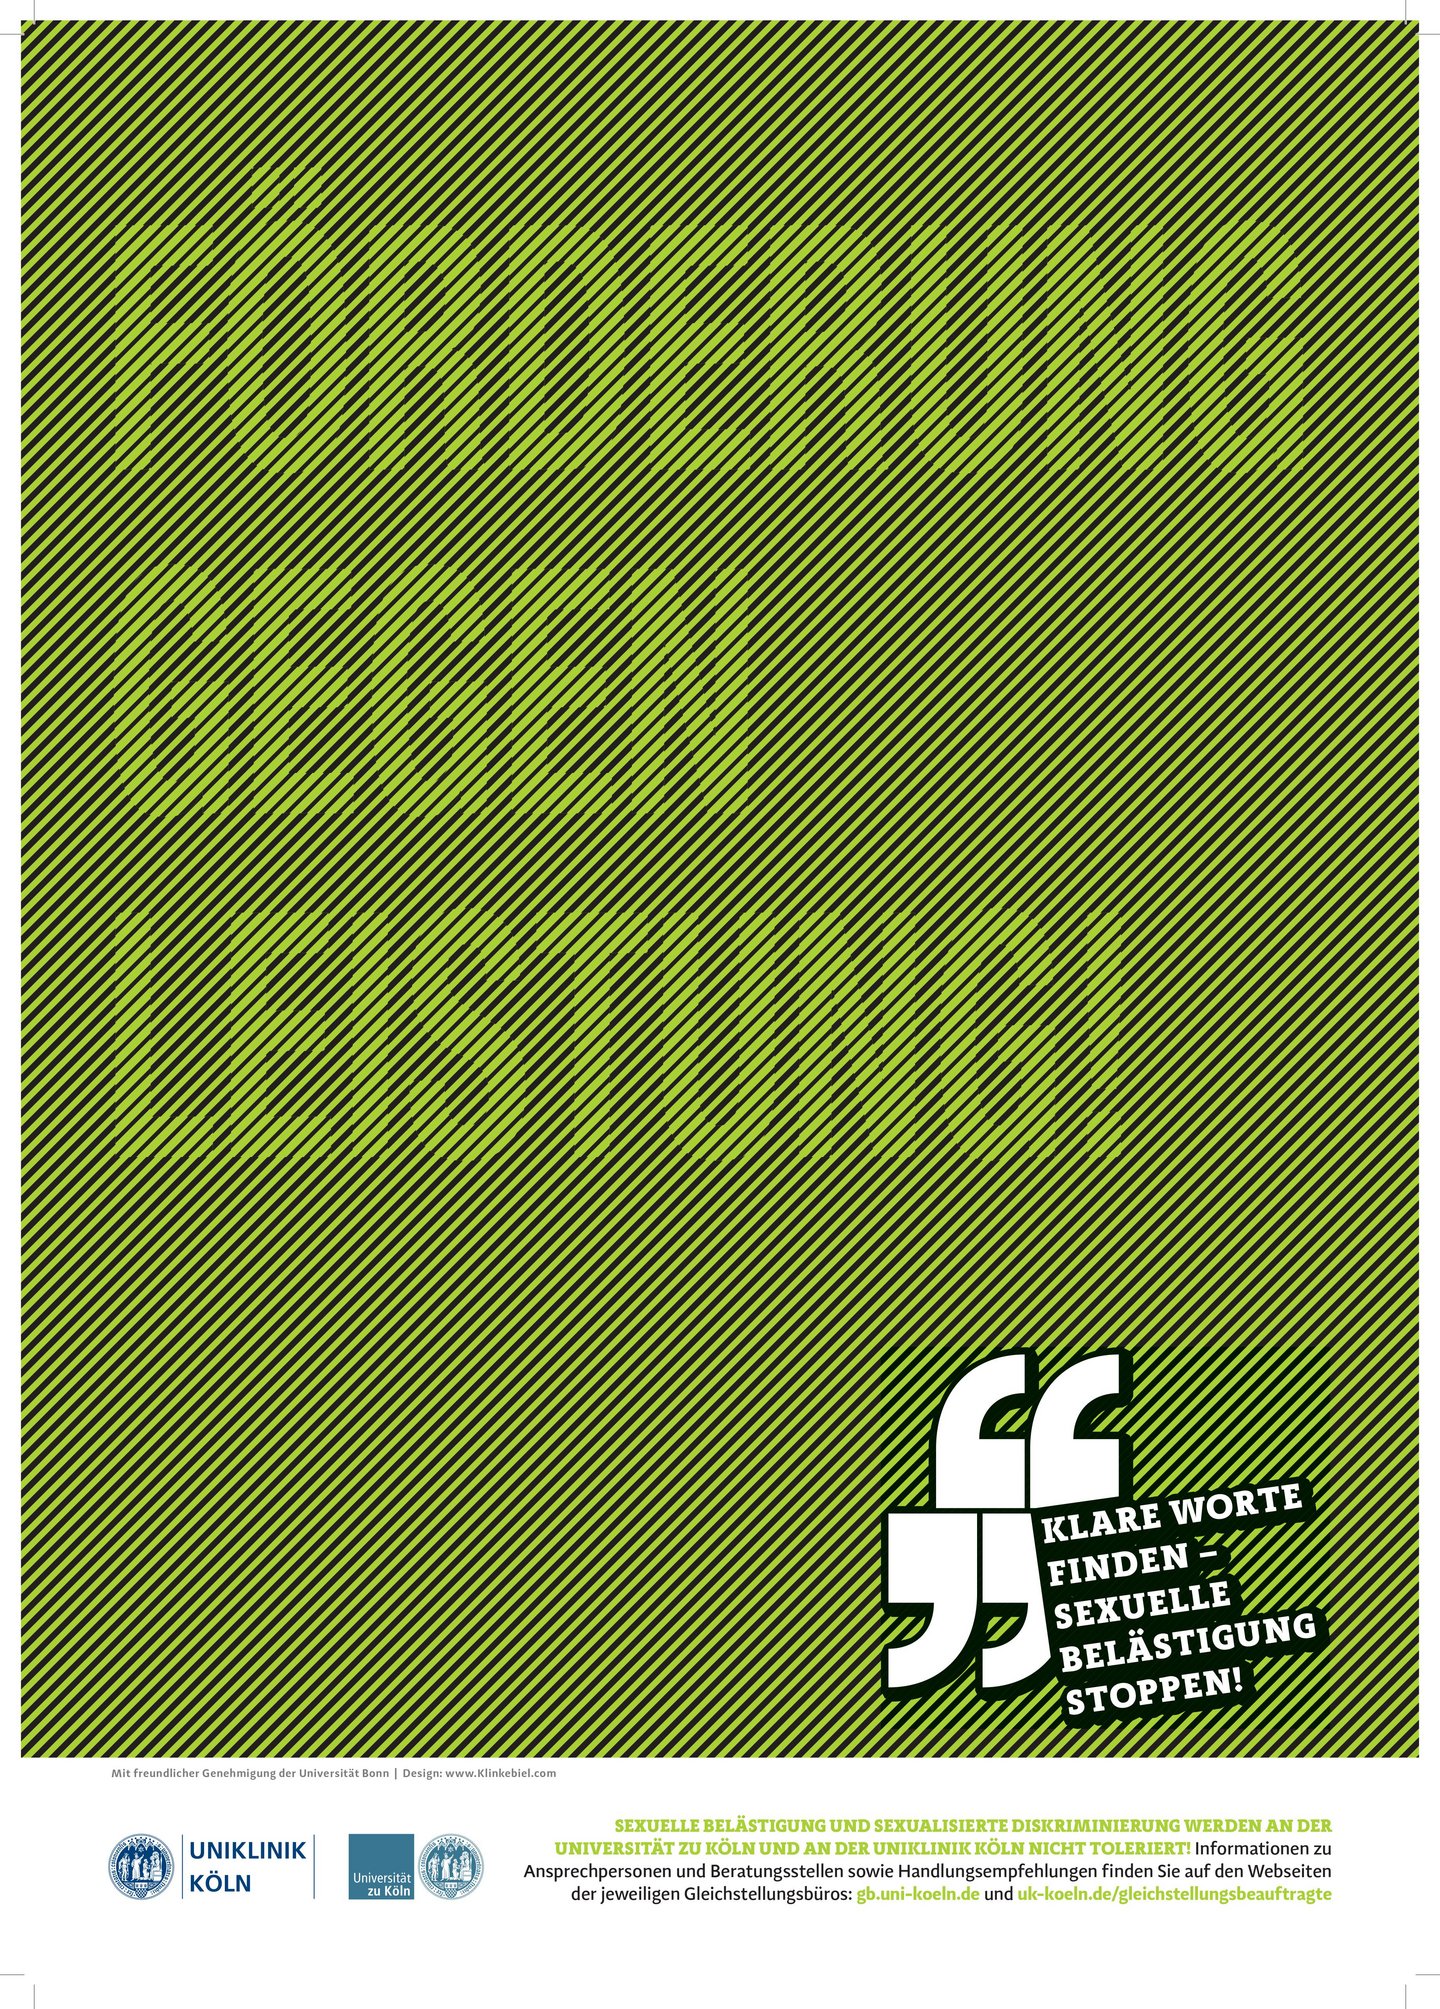 Poster zur Kampagne unboxingdiscrimination in Grün mit schwarzen Diagonalstreifen. Im Plakat steht: Förderung gegen Leistung!